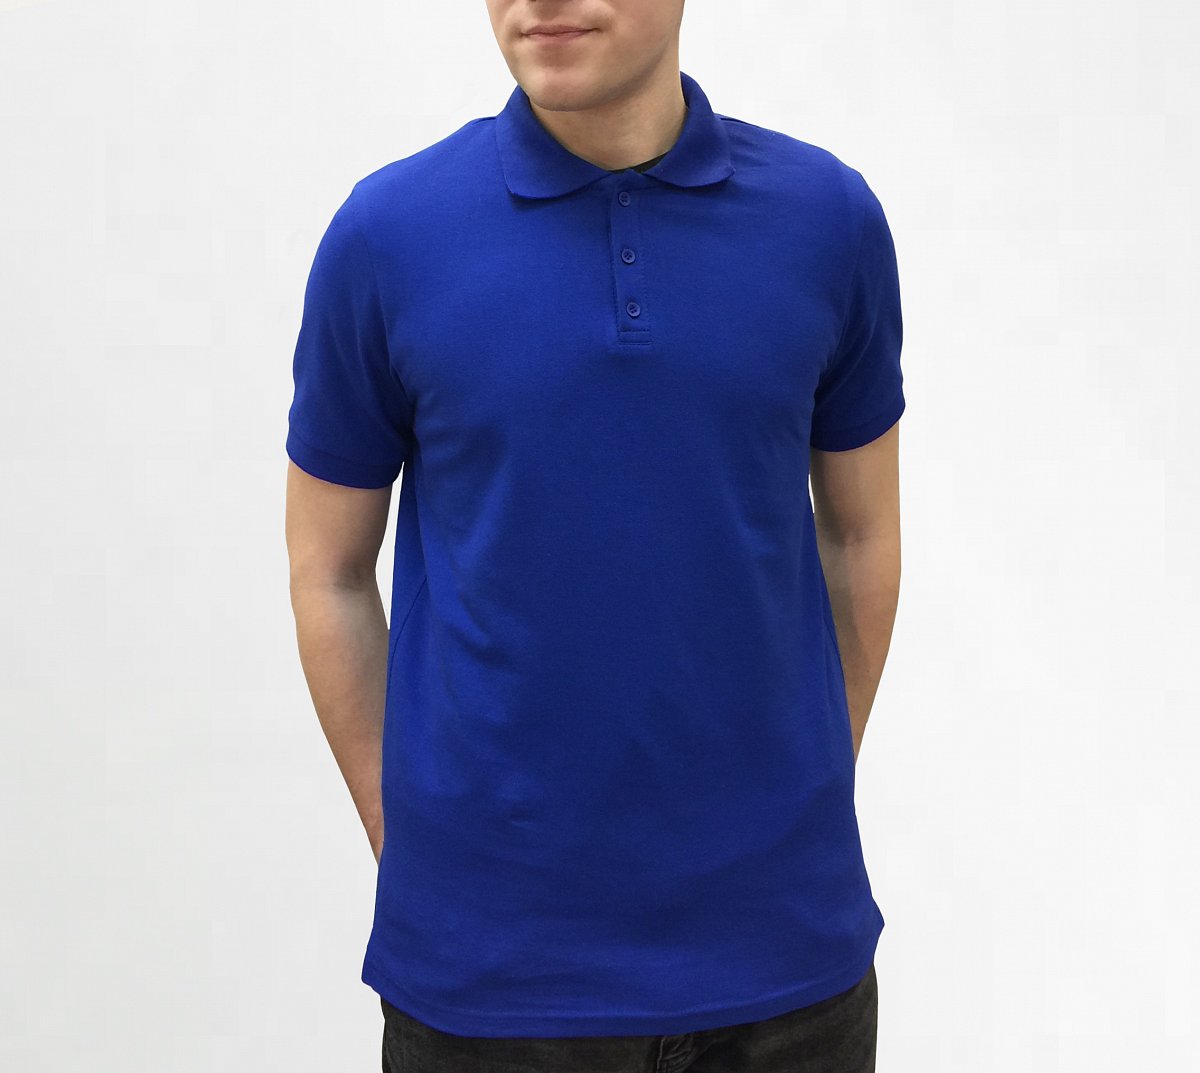 Пошив рубашек поло - пример модели рубашки поло с коротким рукавом